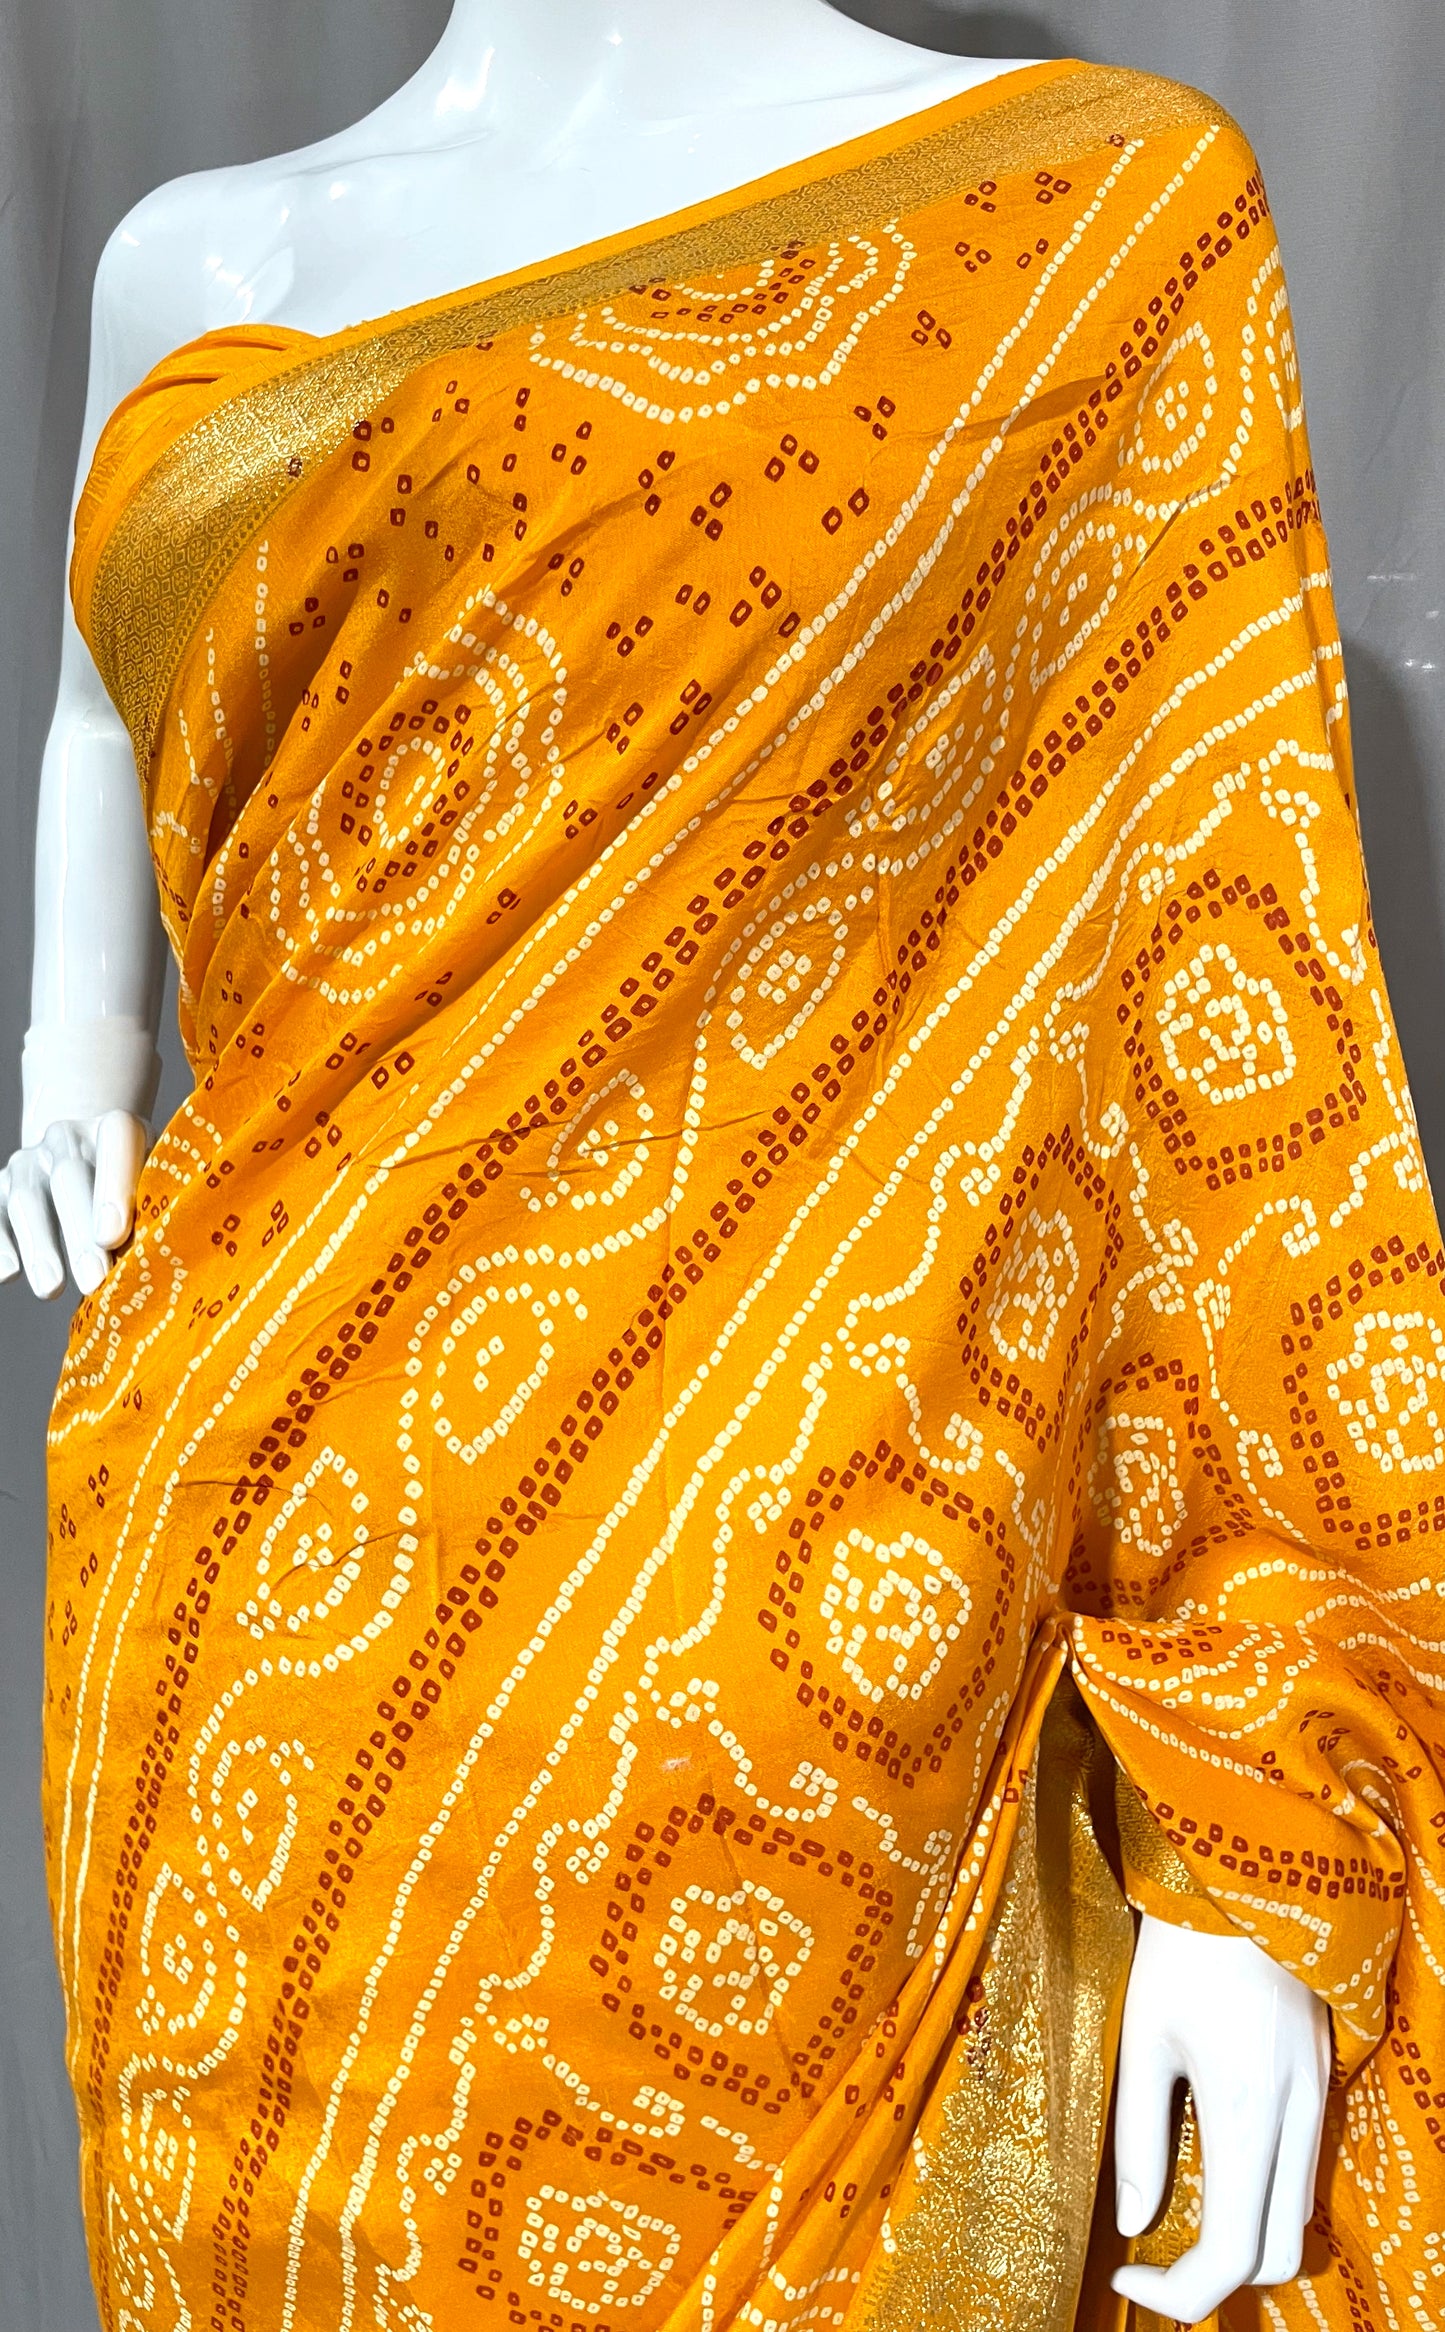 Bright Yellow Bandhani Sari, Bhandej Silk Saree, Jaipuri print Saree